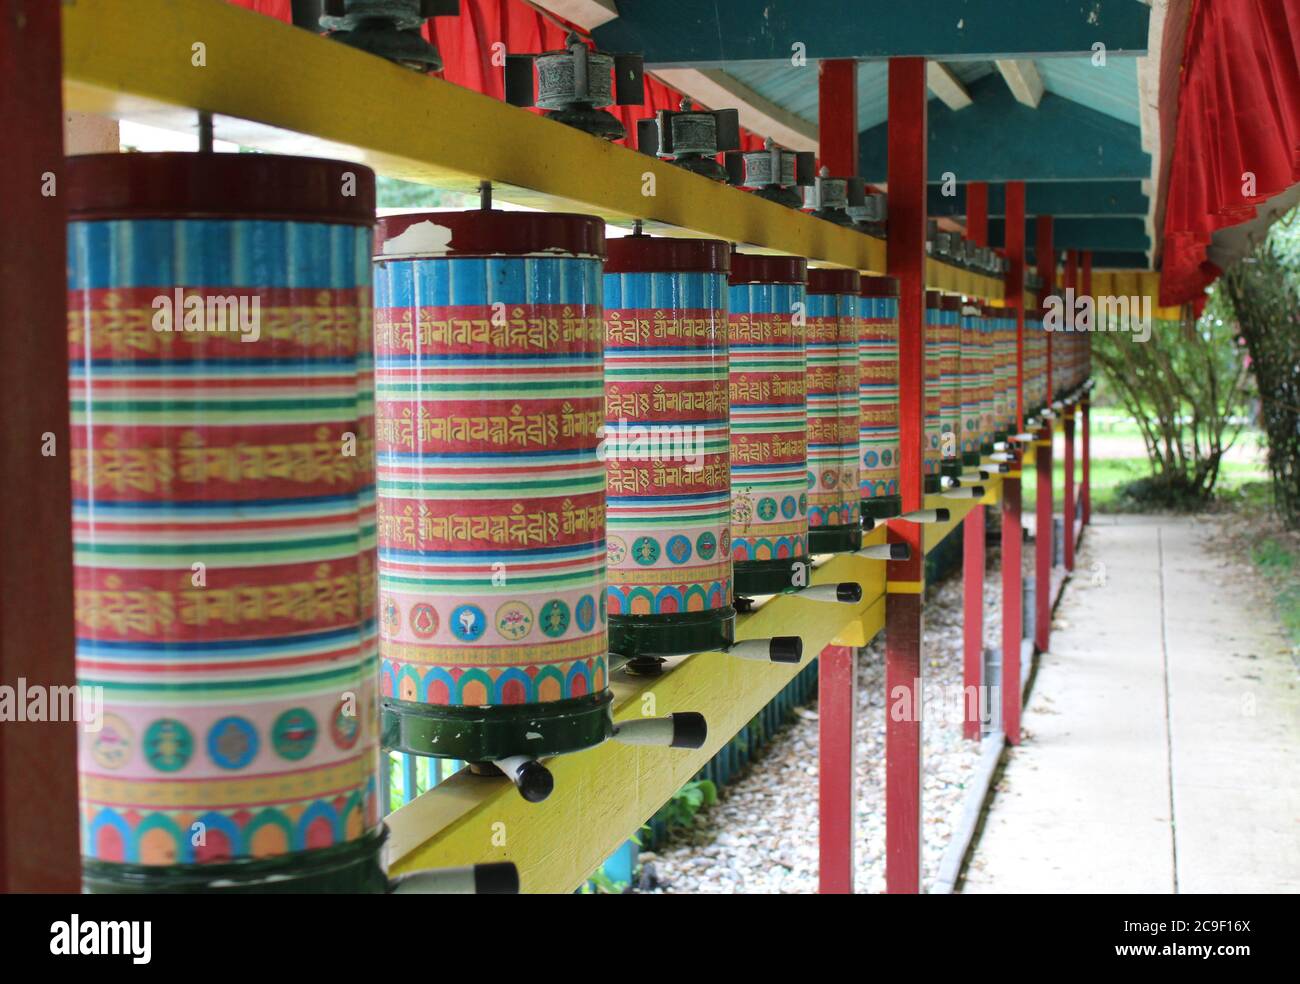 DOKKUM, PAYS-BAS, 23 JUILLET 2020 : des roues de prière colorées dans un temple bouddhiste tibétain. Karma Deleg Chö Phel Ling est un centre d'étude et de méditation Banque D'Images